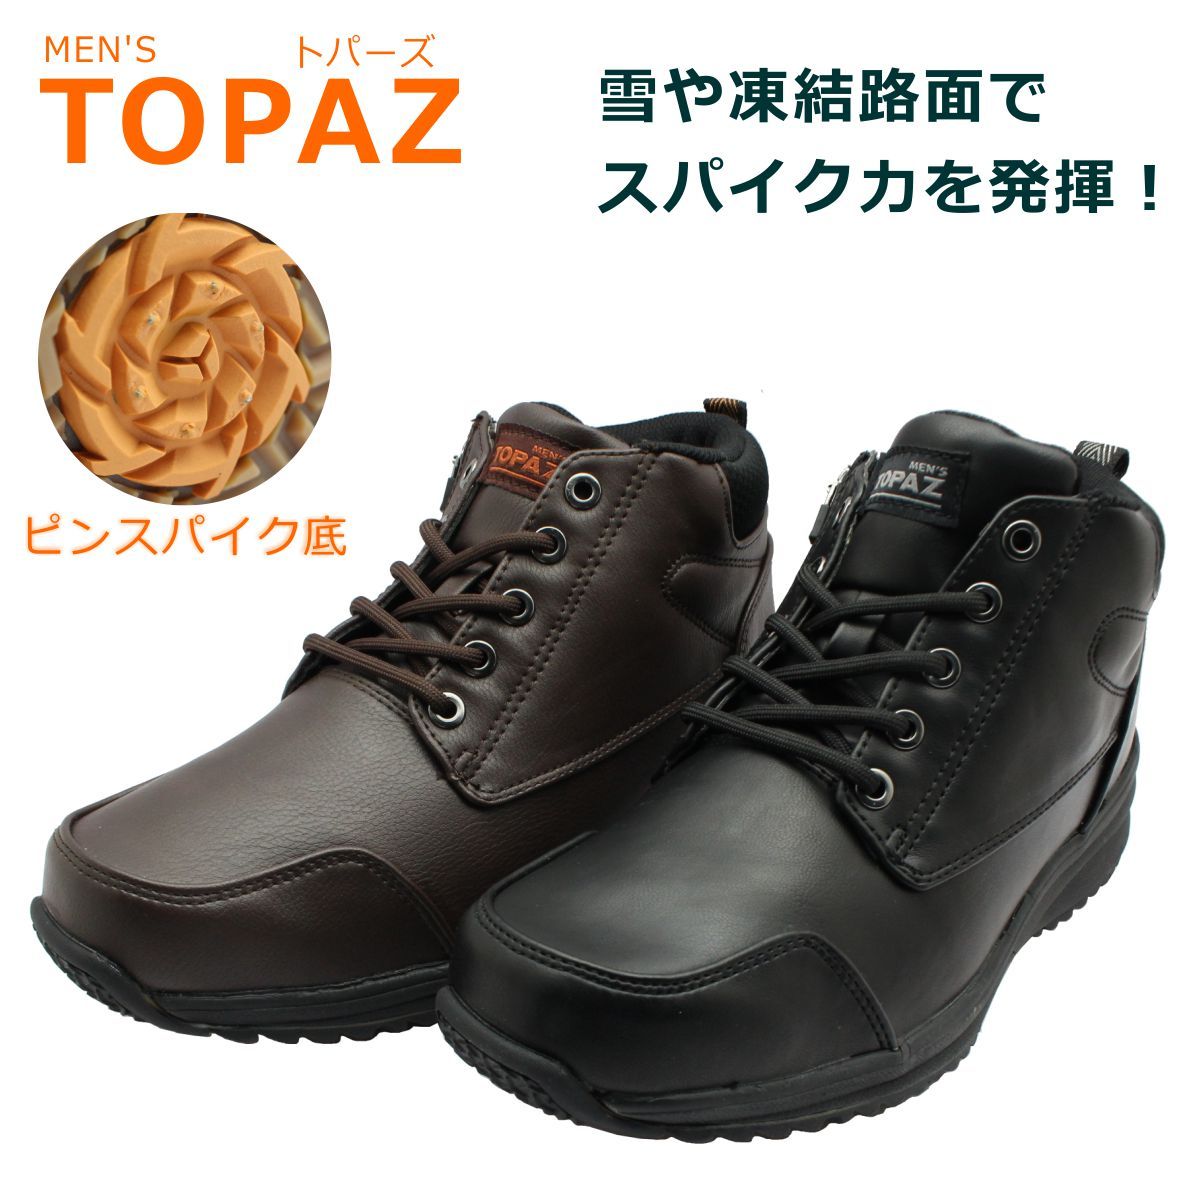 トパーズ TOPAZA メンズ スパイク スノーシューズ MTZ-0143SP 143 防水 防滑 4E幅広 世界長 :top0143:ミッキー靴店  通販 